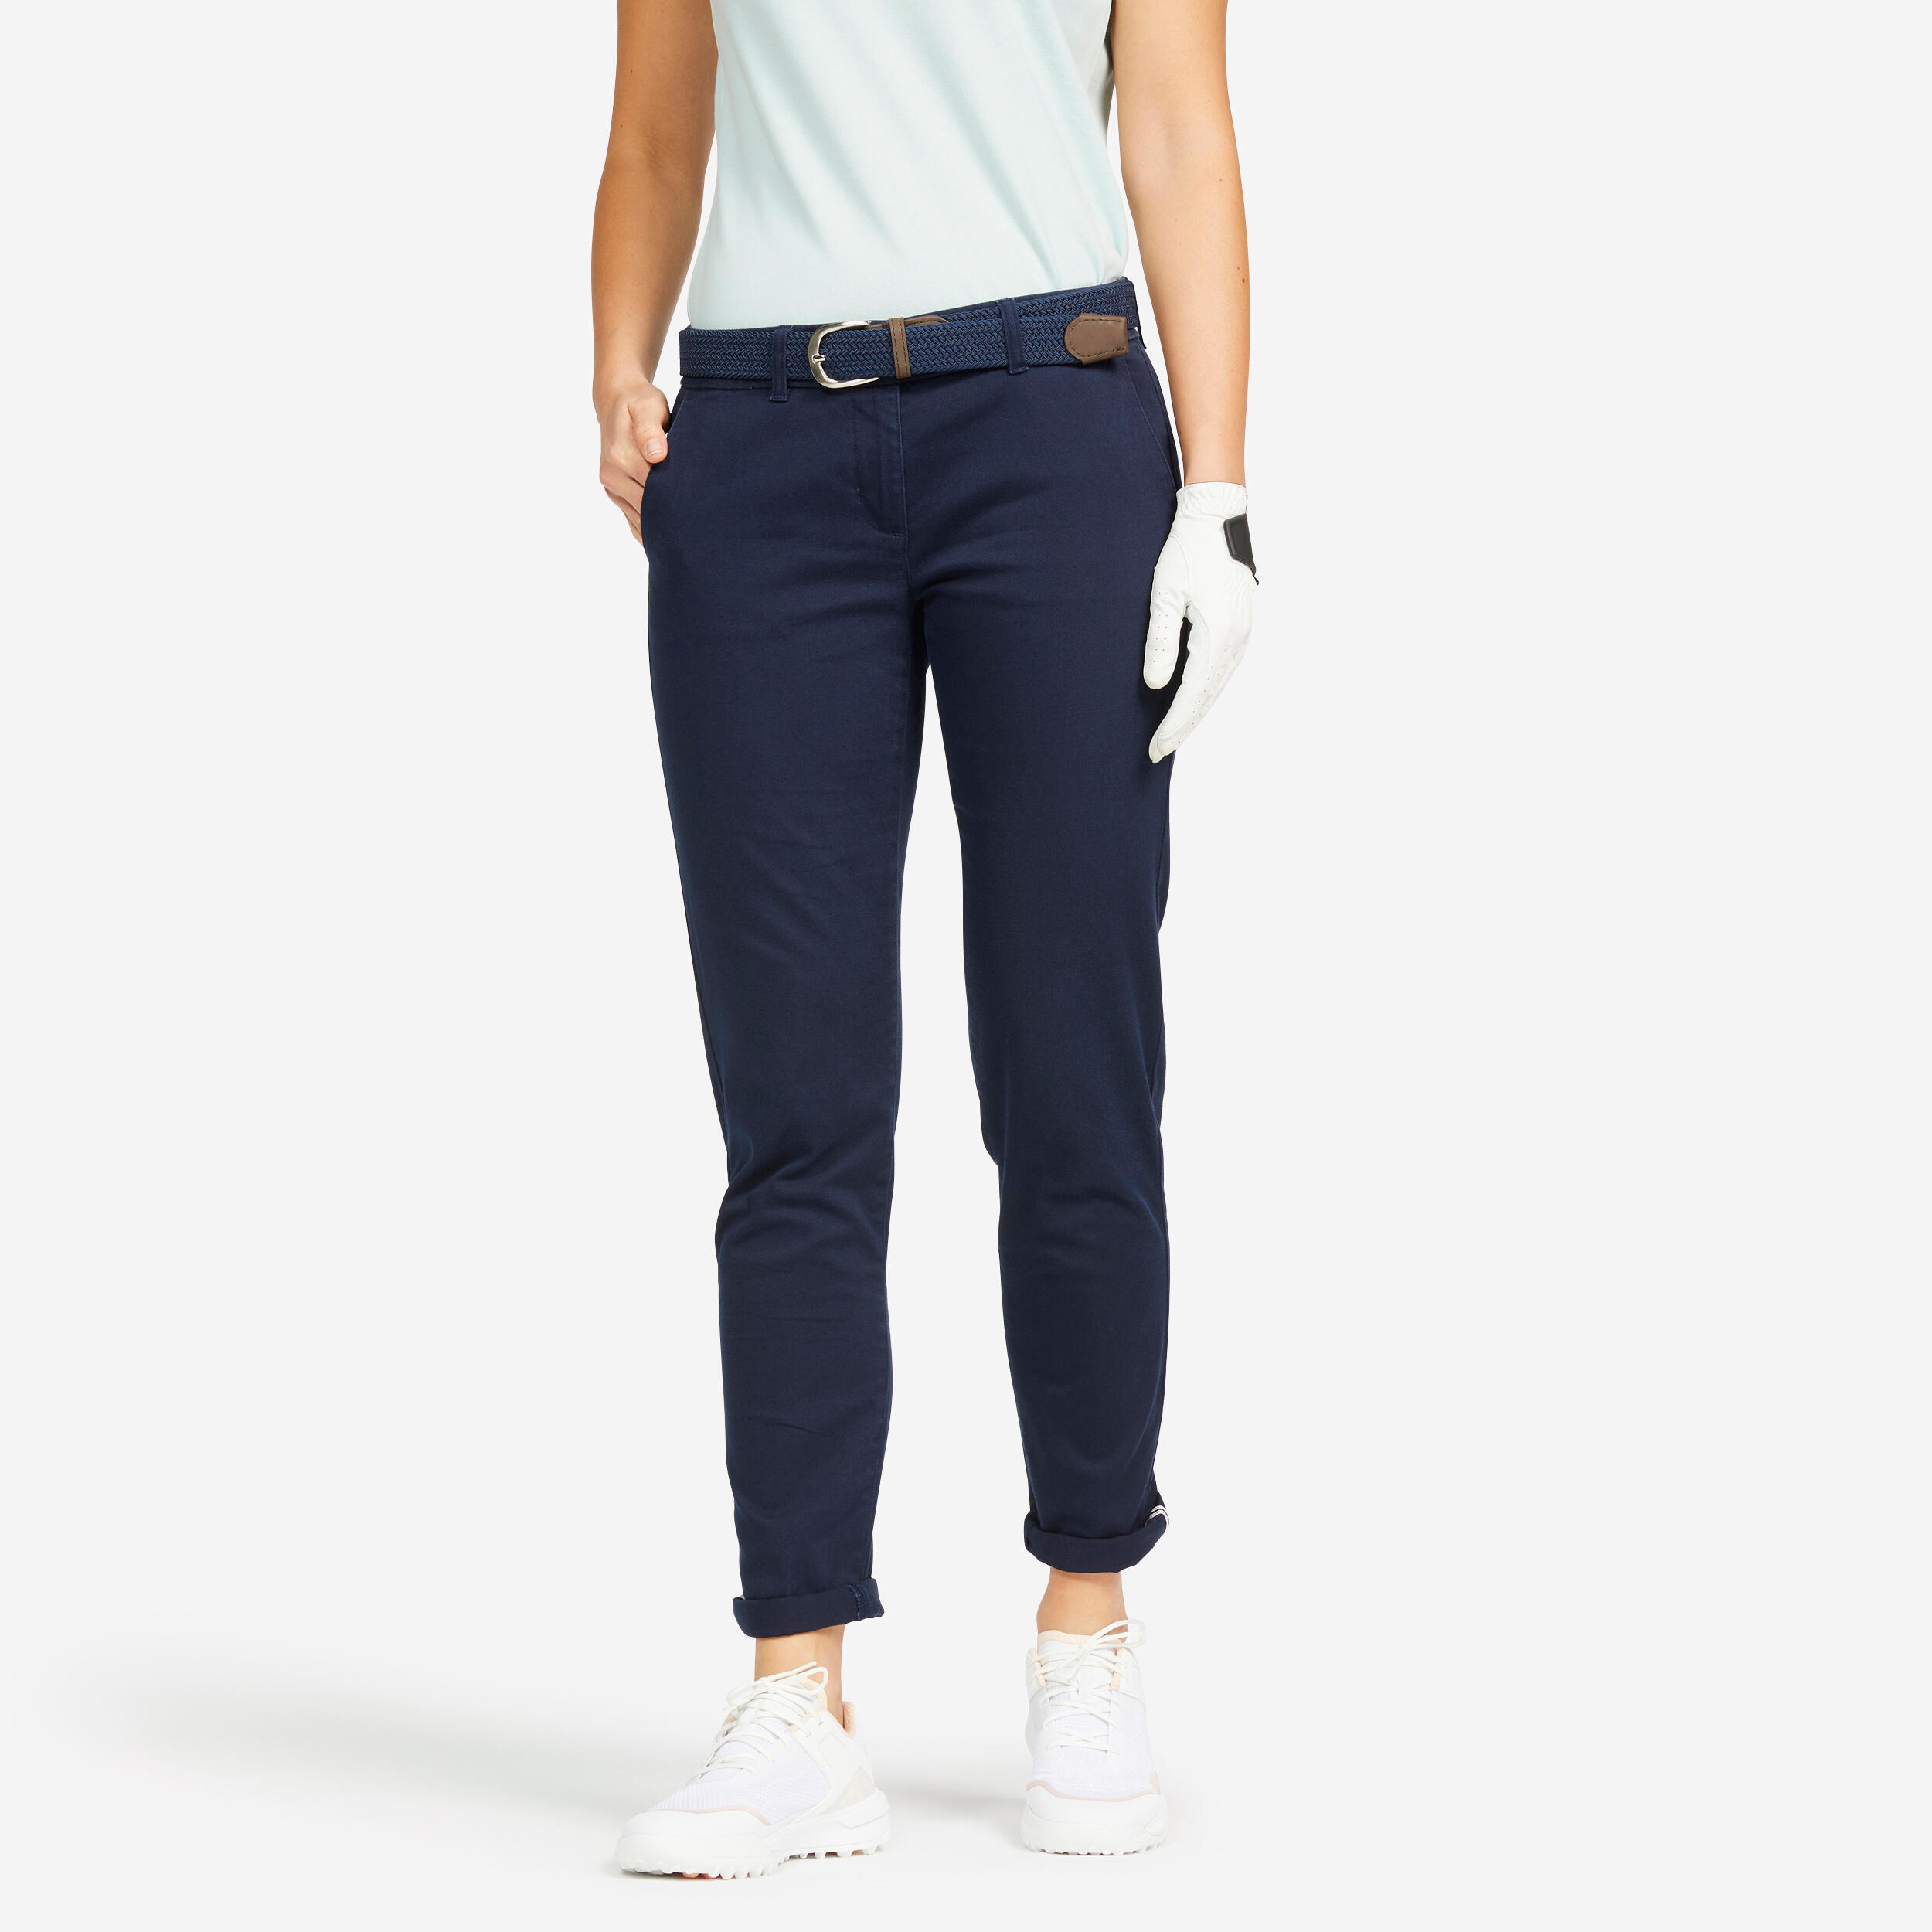 Pantalon Golf Mw500 Bleumarin Dama